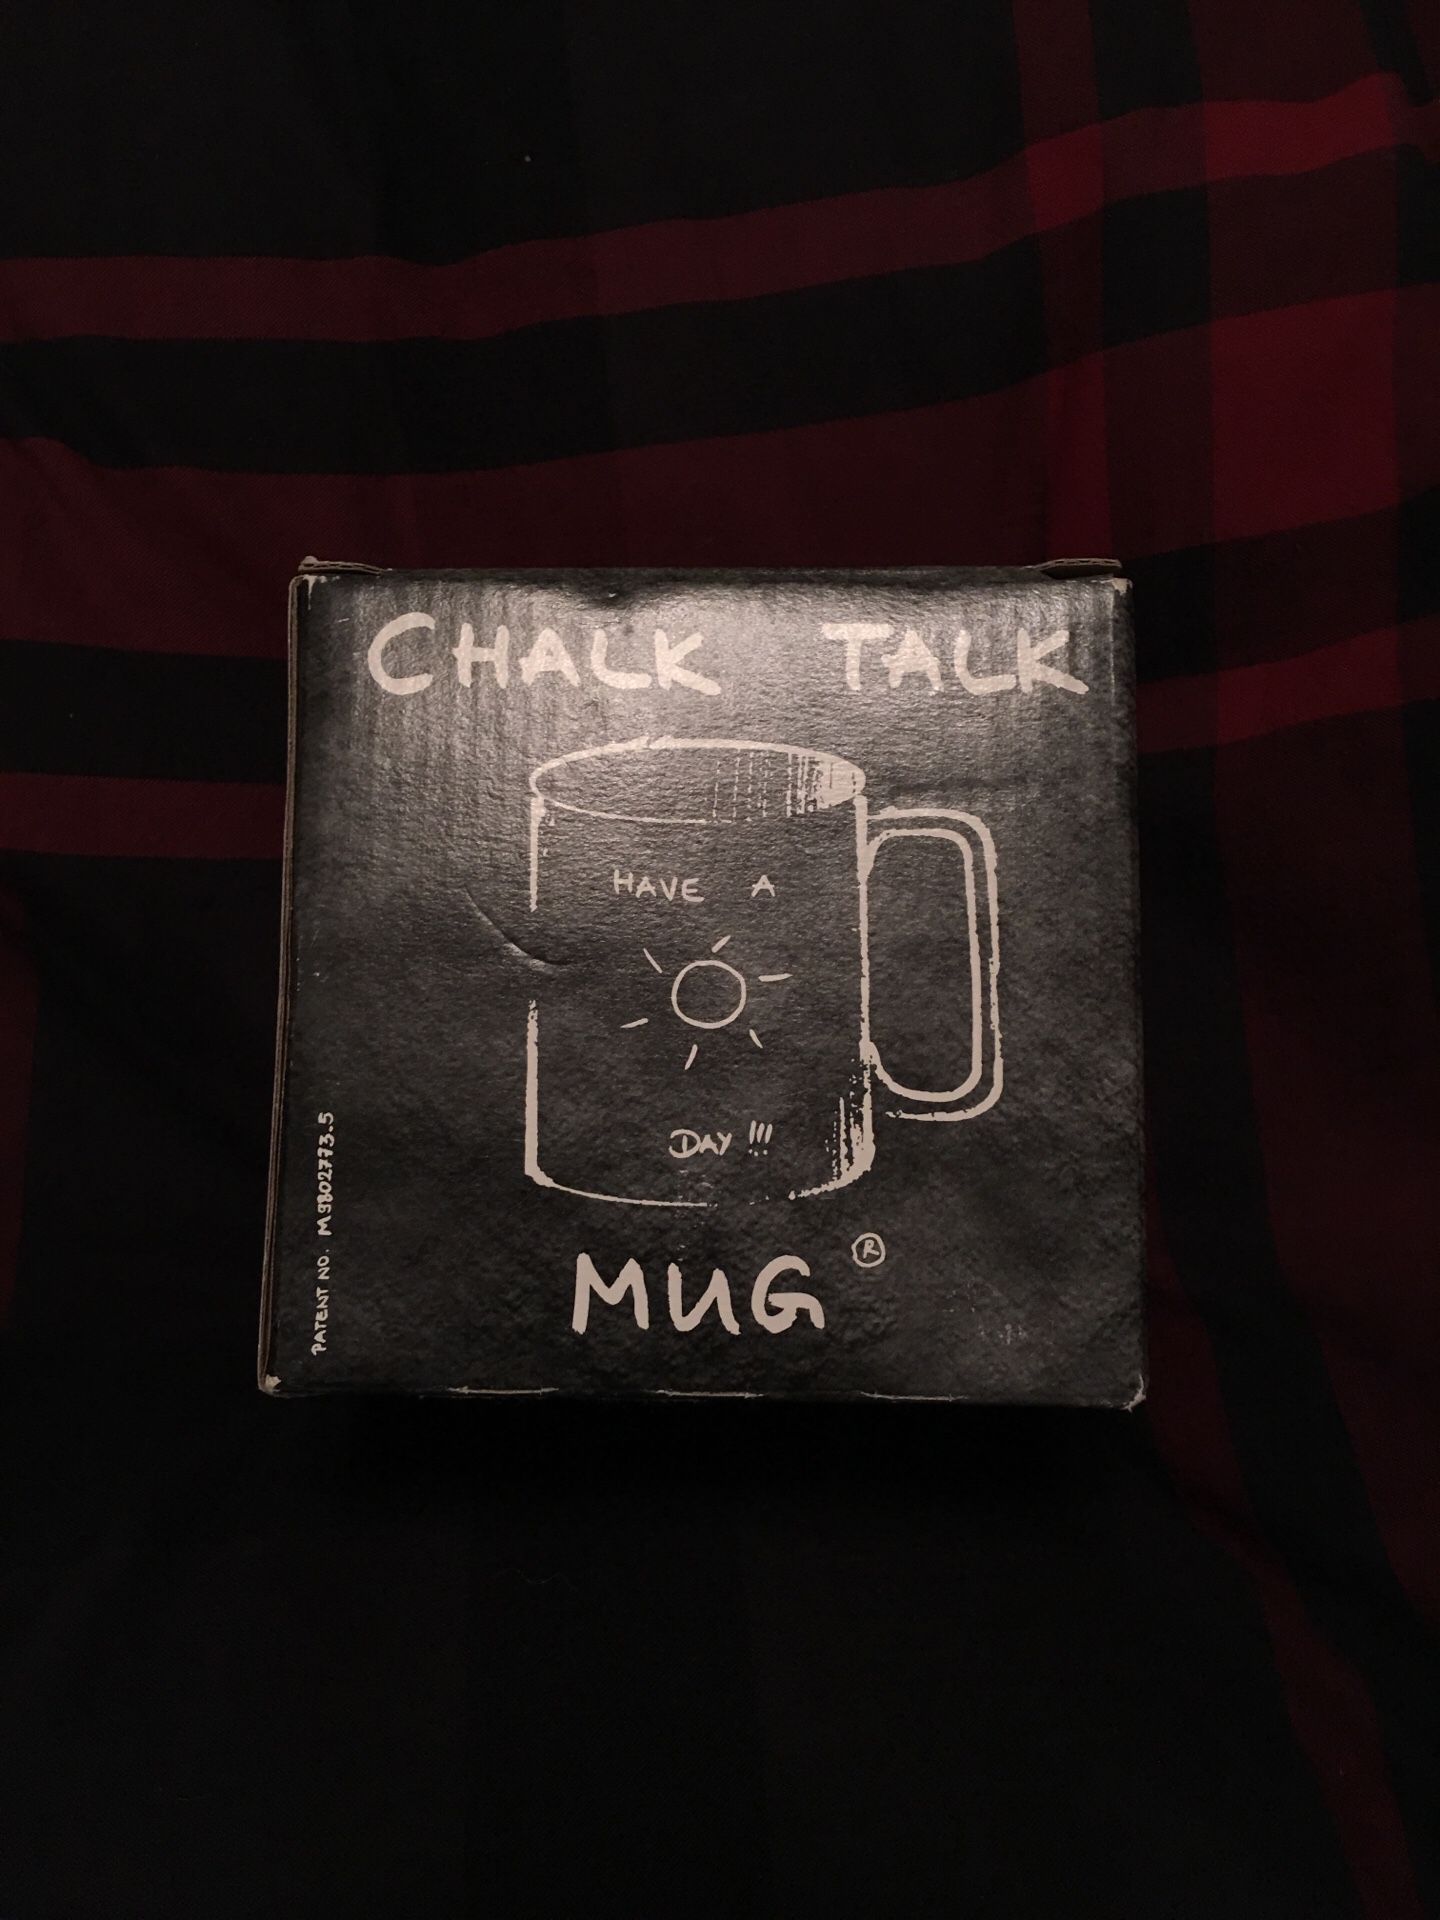 Chalk talk coffee mug